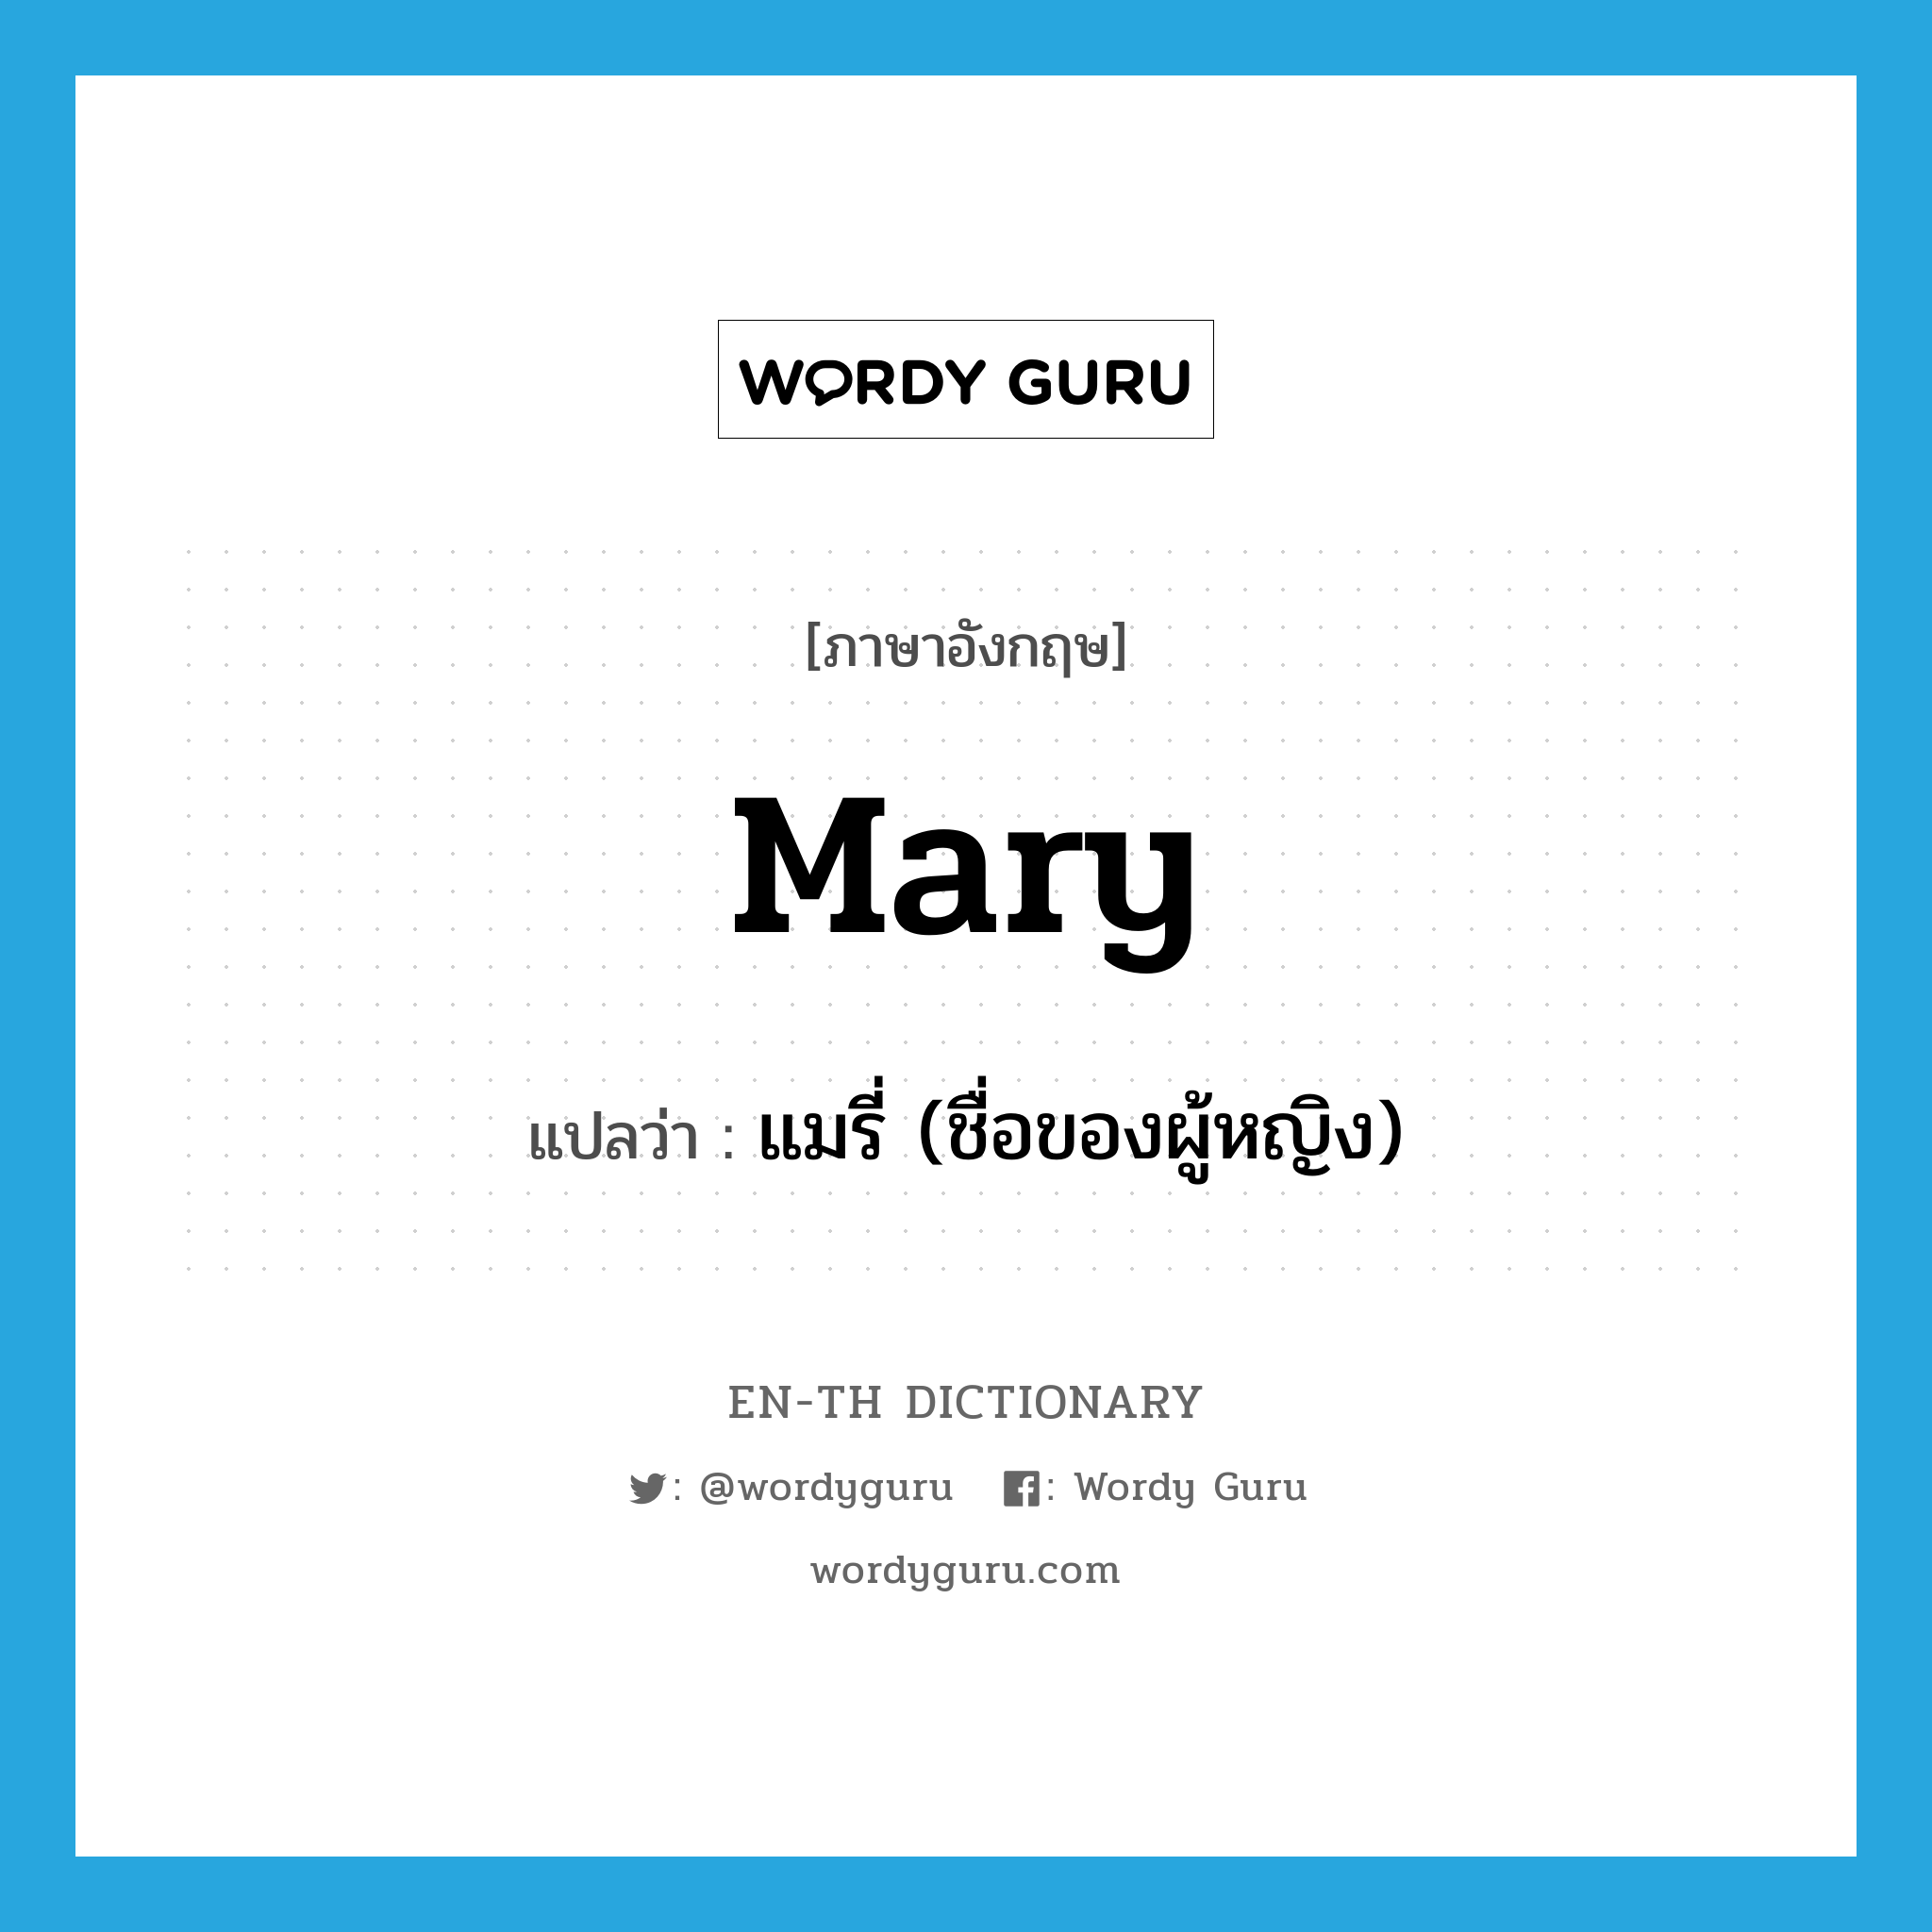 แมรี่ (ชื่อของผู้หญิง) ภาษาอังกฤษ?, คำศัพท์ภาษาอังกฤษ แมรี่ (ชื่อของผู้หญิง) แปลว่า Mary ประเภท N หมวด N